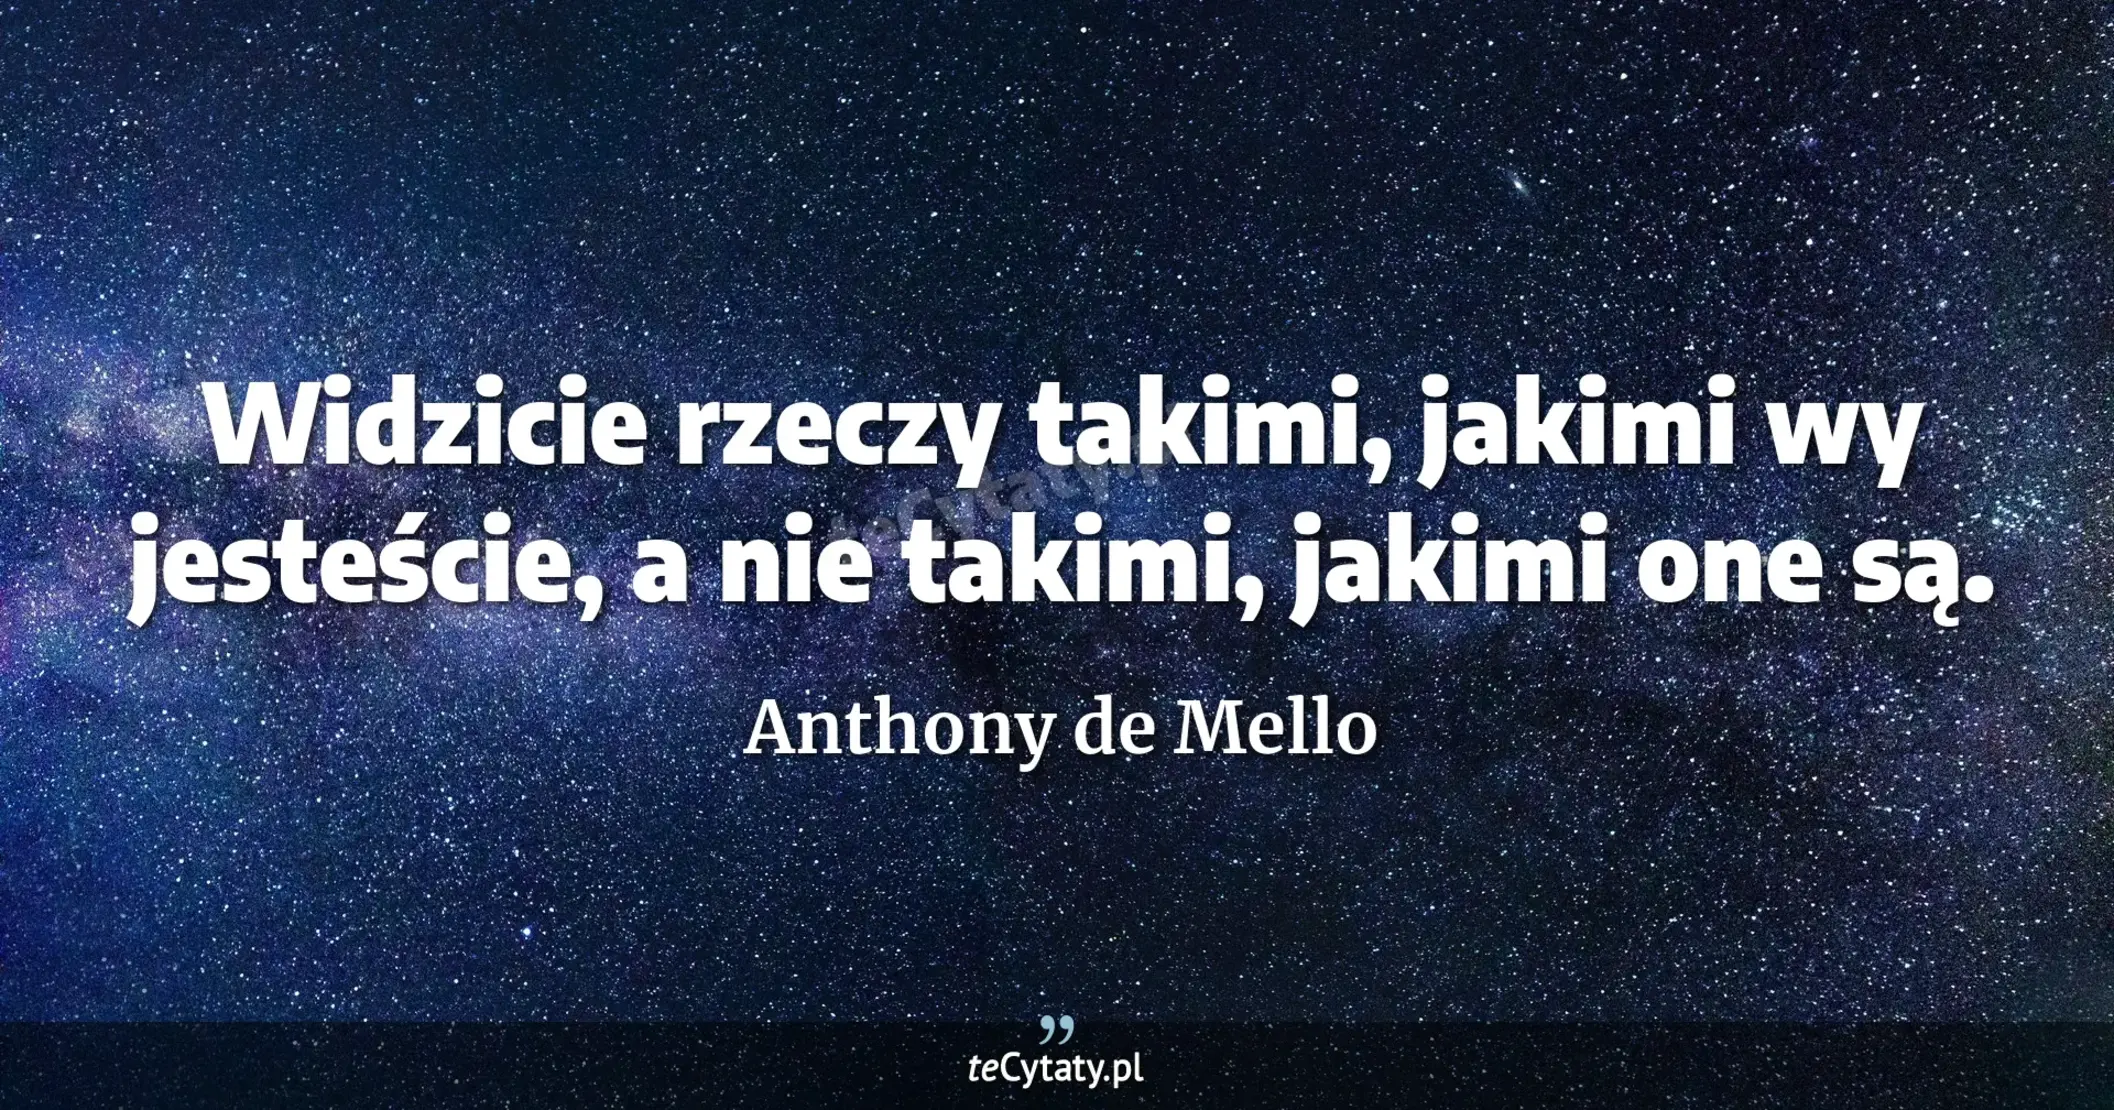 Widzicie rzeczy takimi, jakimi wy jesteście, a nie takimi, jakimi one są. - Anthony de Mello